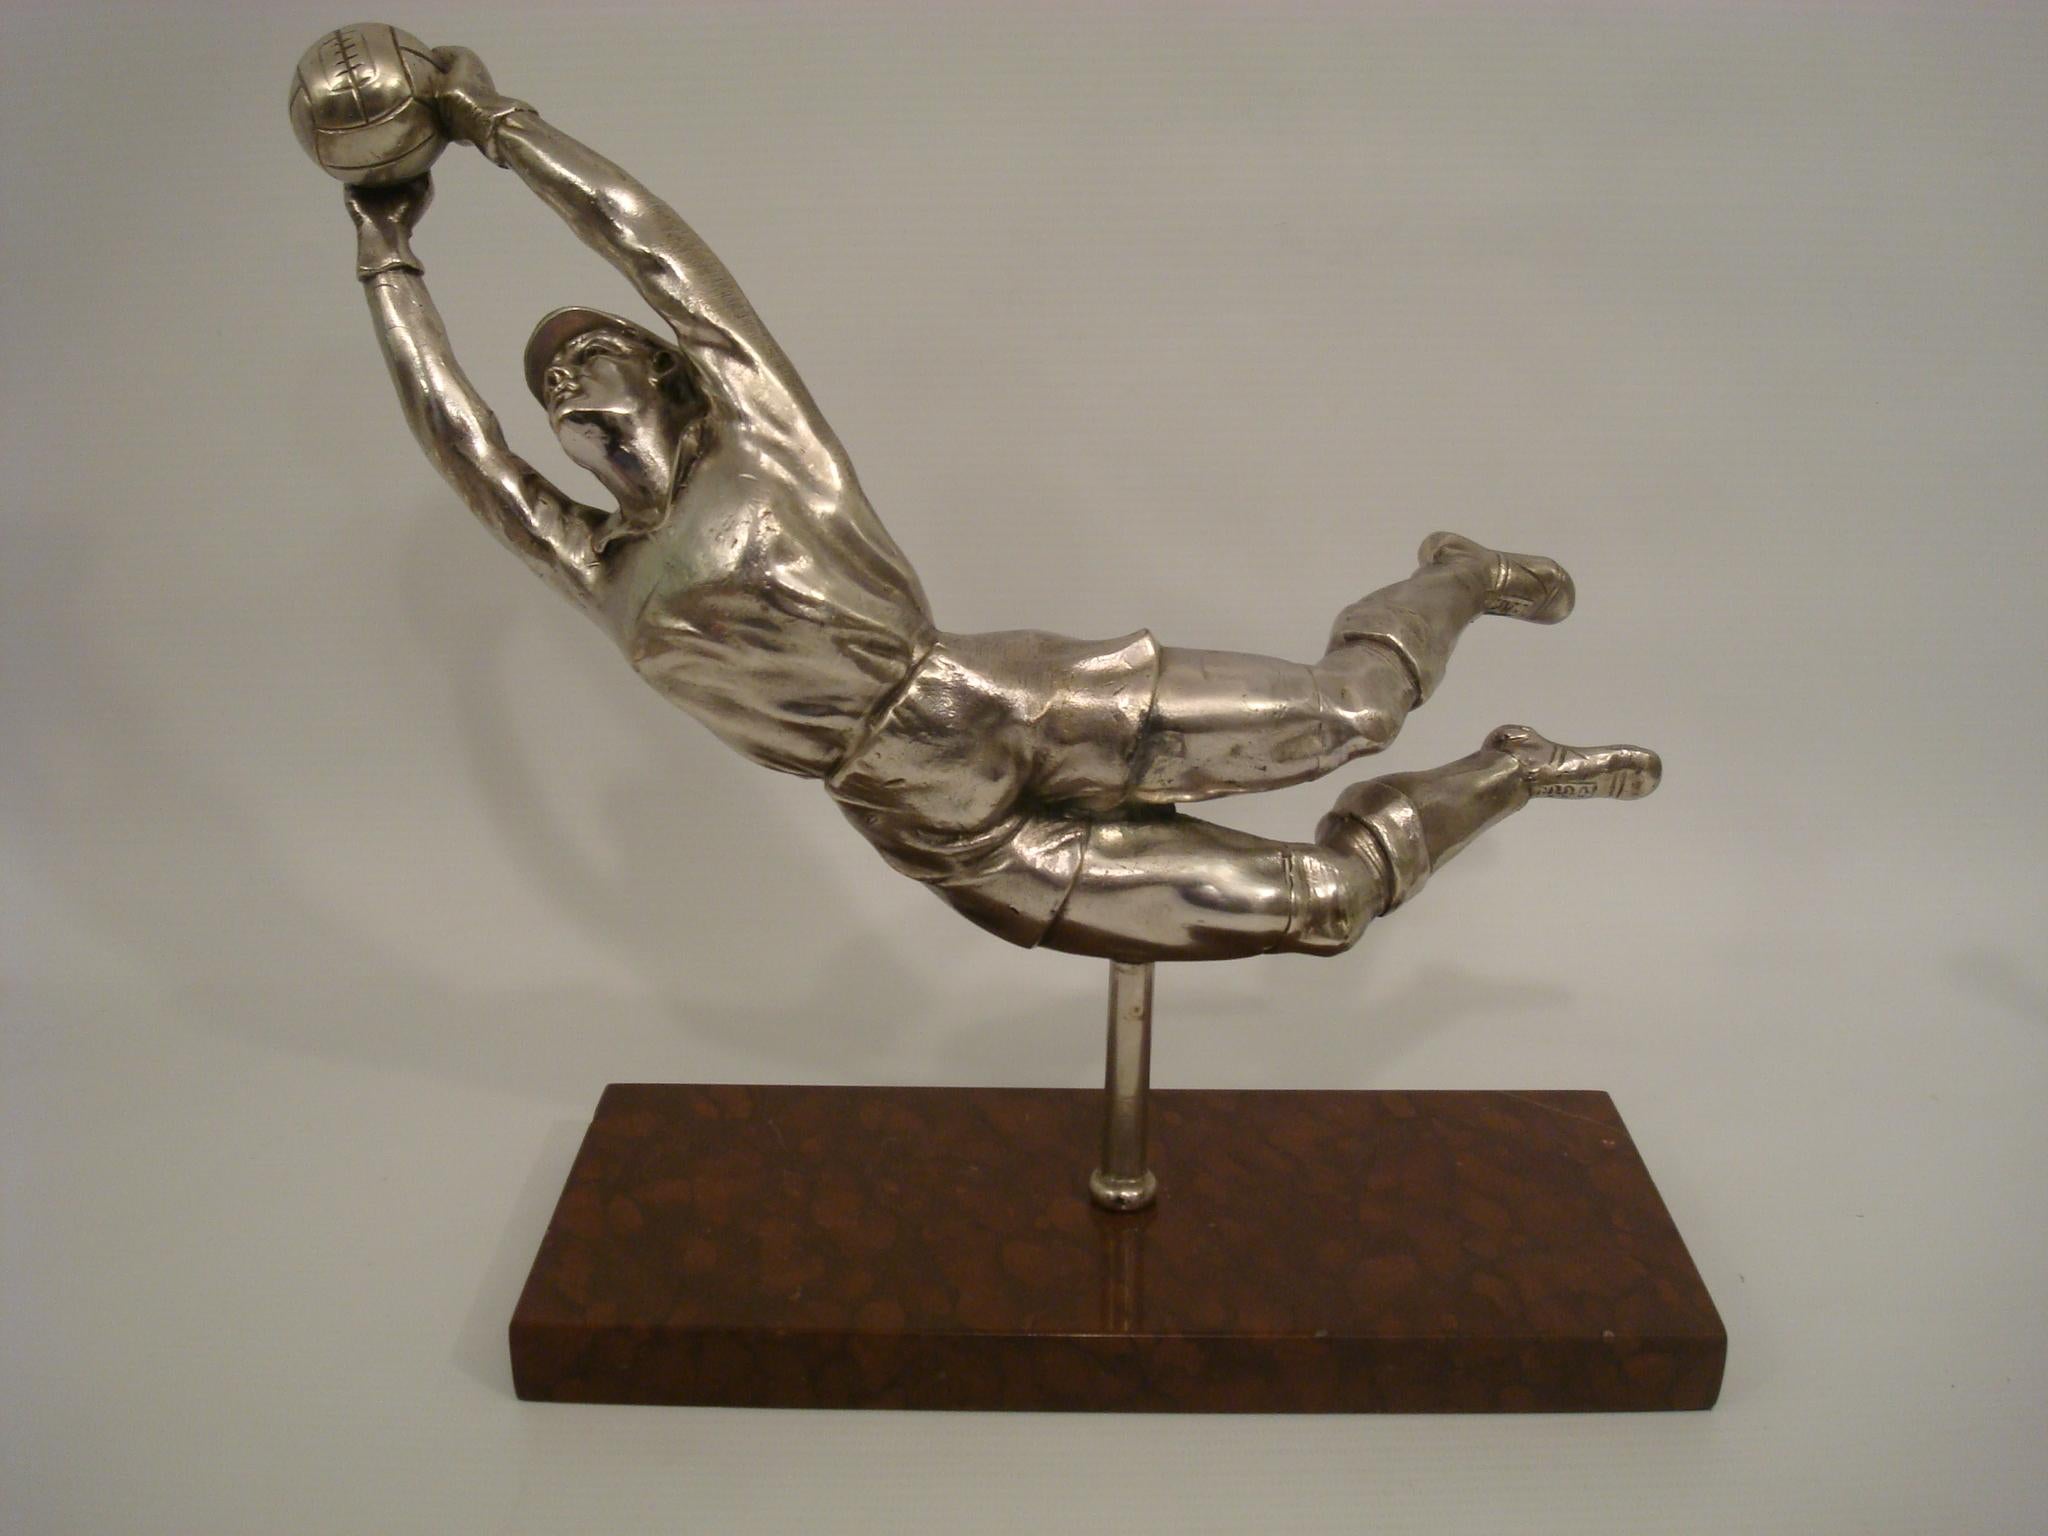 Versilberte Zinnfigur eines springenden Fußballspielers, Fußballtorwart Frankreich, um 1940, signiert E. Drouot. Versilbertes Metall auf einem Marmorsockel.
Perfekt für eine Trophäe.

 